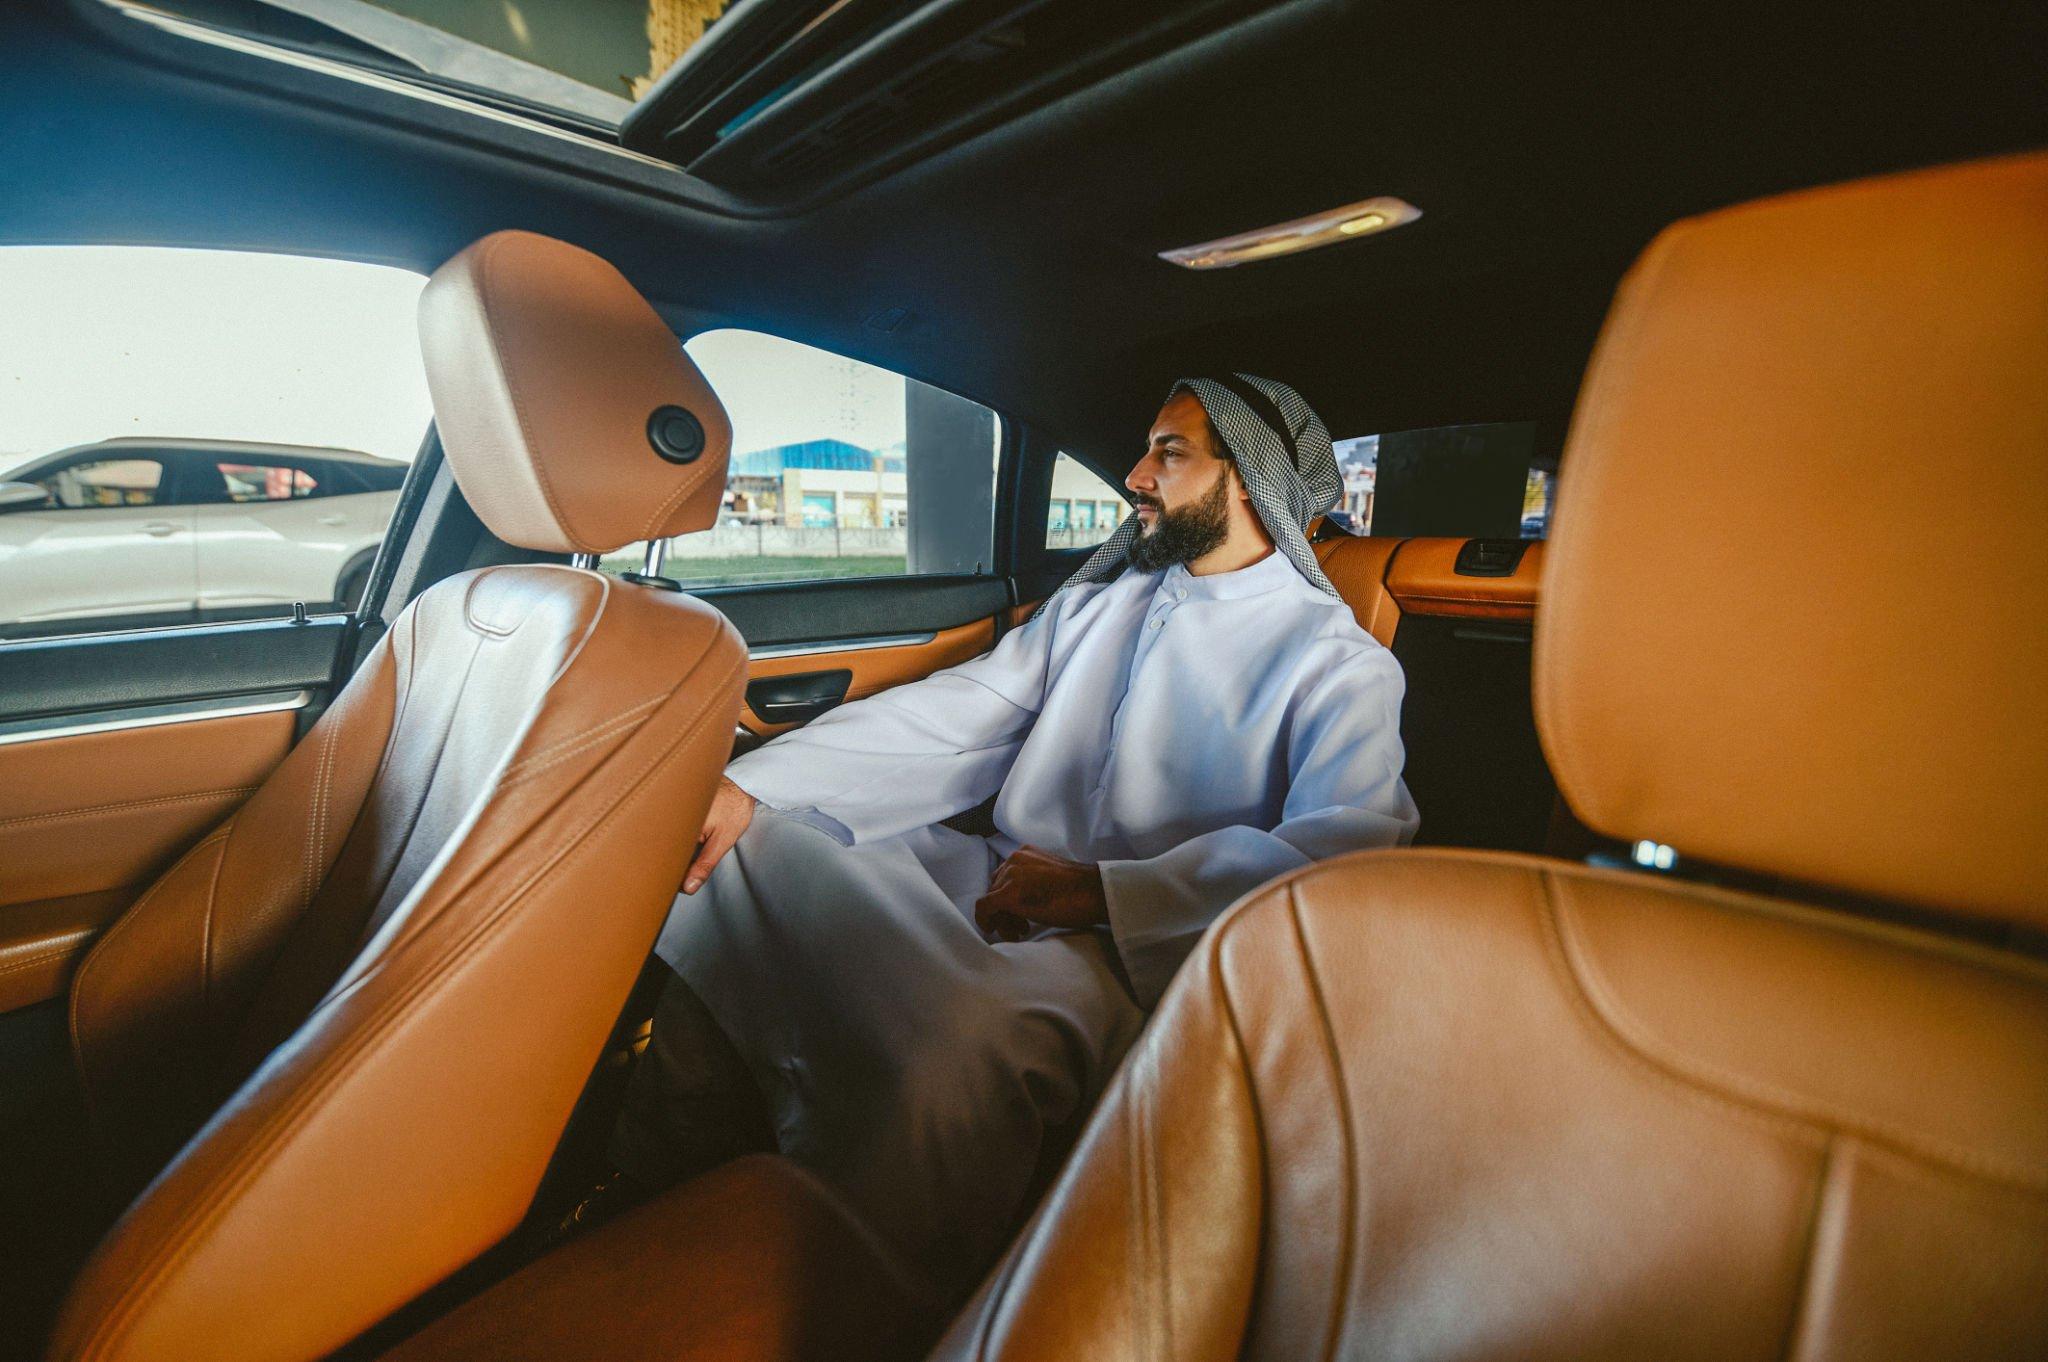 Chauffeur Services in Dubai: Business Trip Mastery